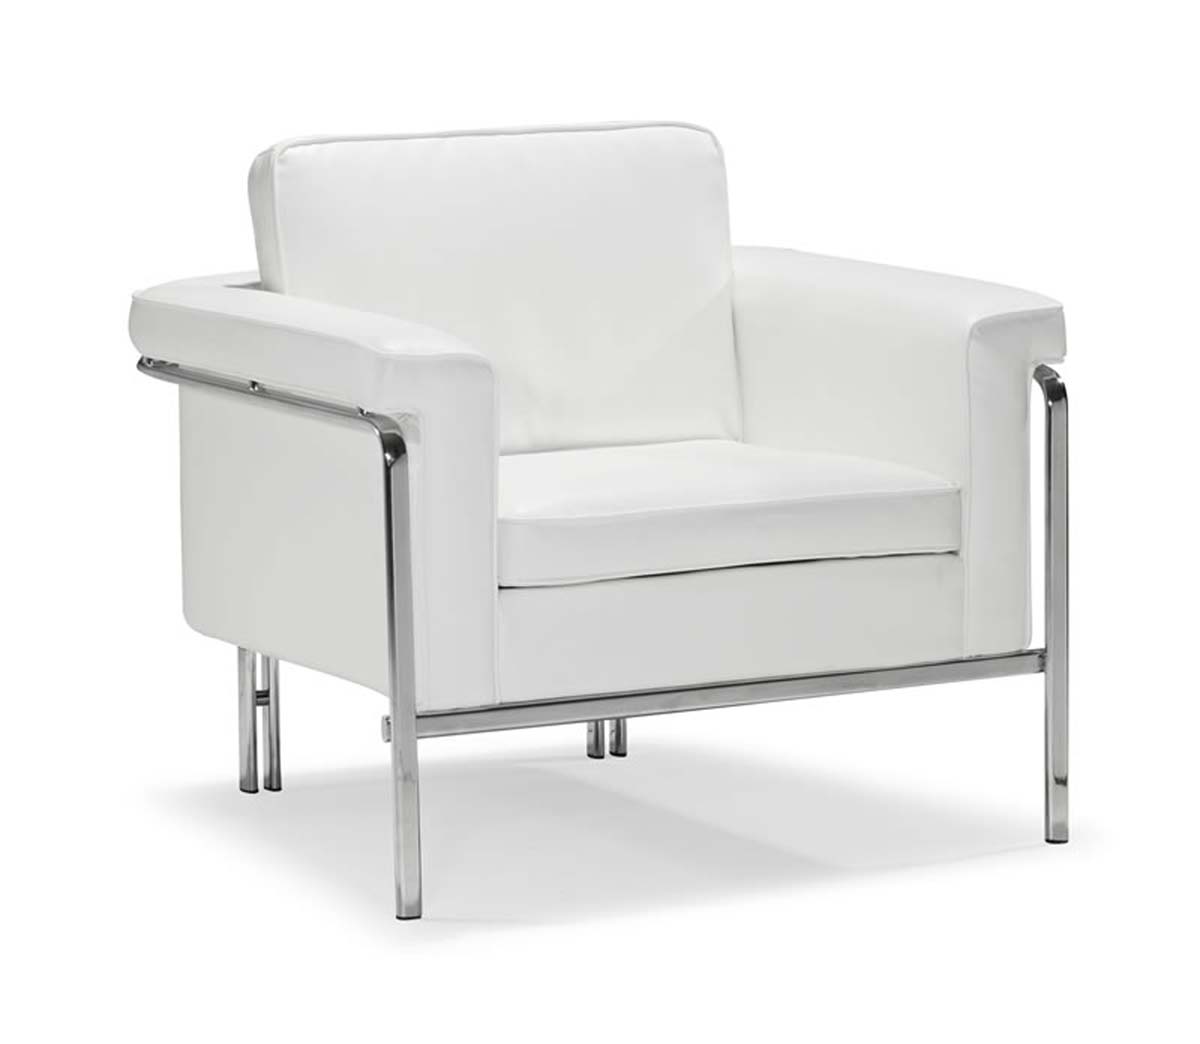 Zuo Modern Singular Armchair - White